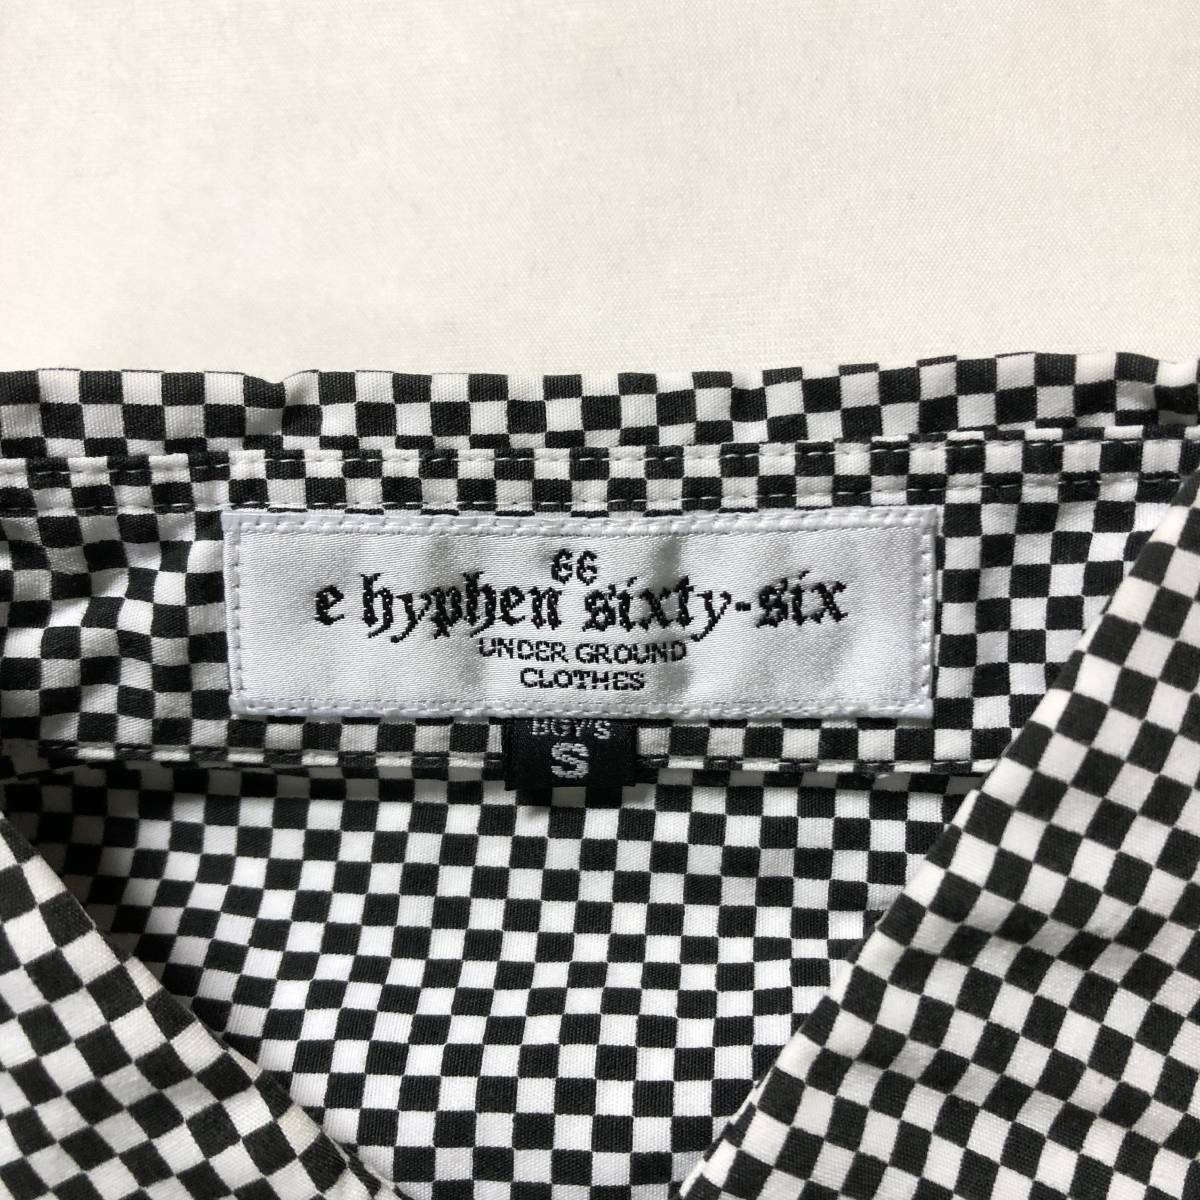 日本製 E hyphen 66 イーハイフン 黒×白 チェック シャツ 美品 管理B67